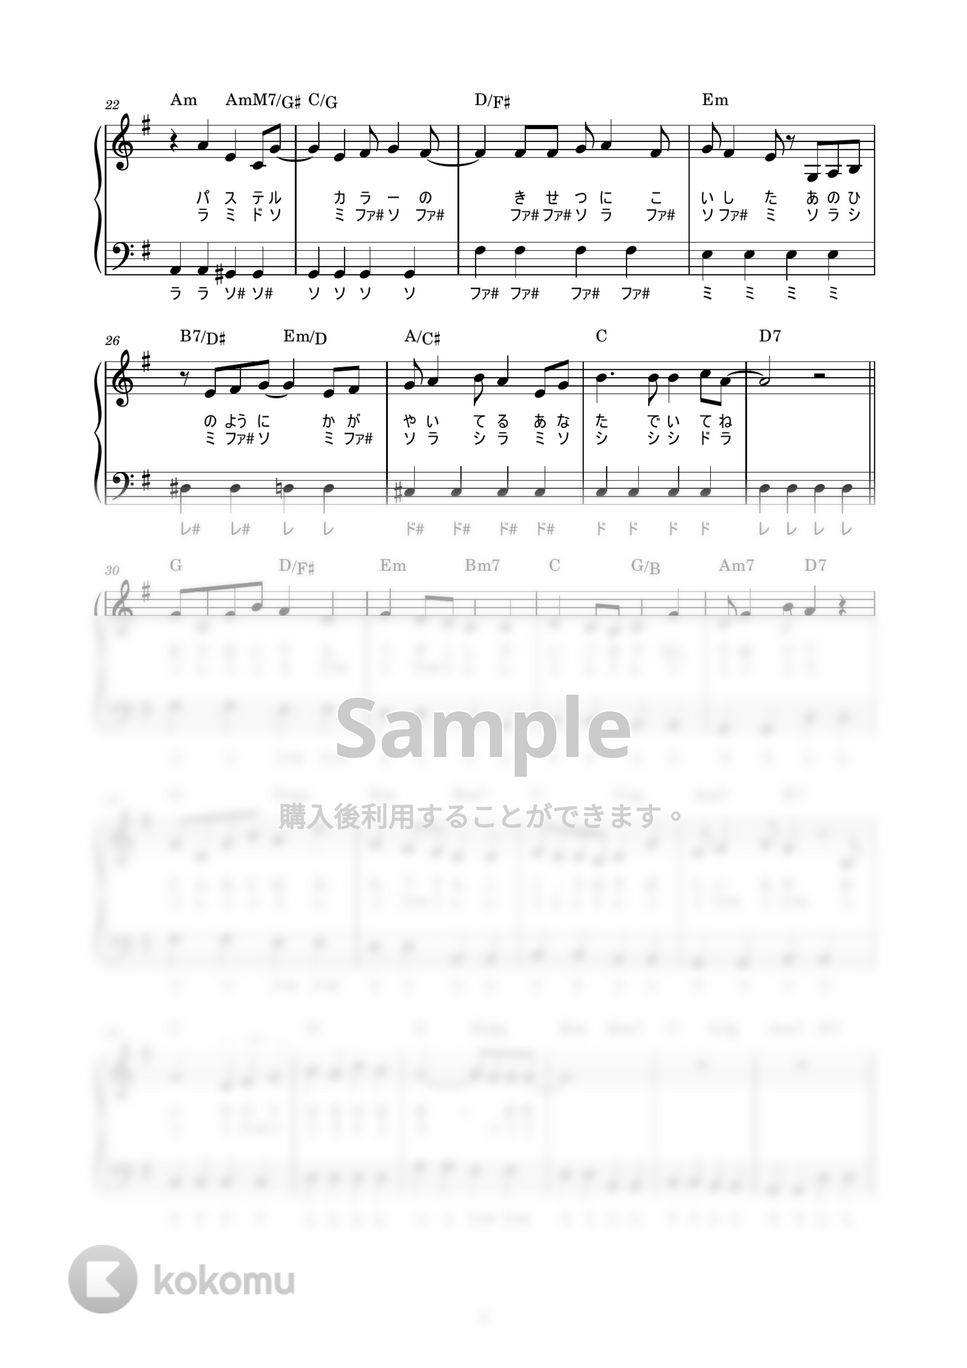 ZARD - 負けないで (かんたん / 歌詞付き / ドレミ付き / 初心者) by piano.tokyo